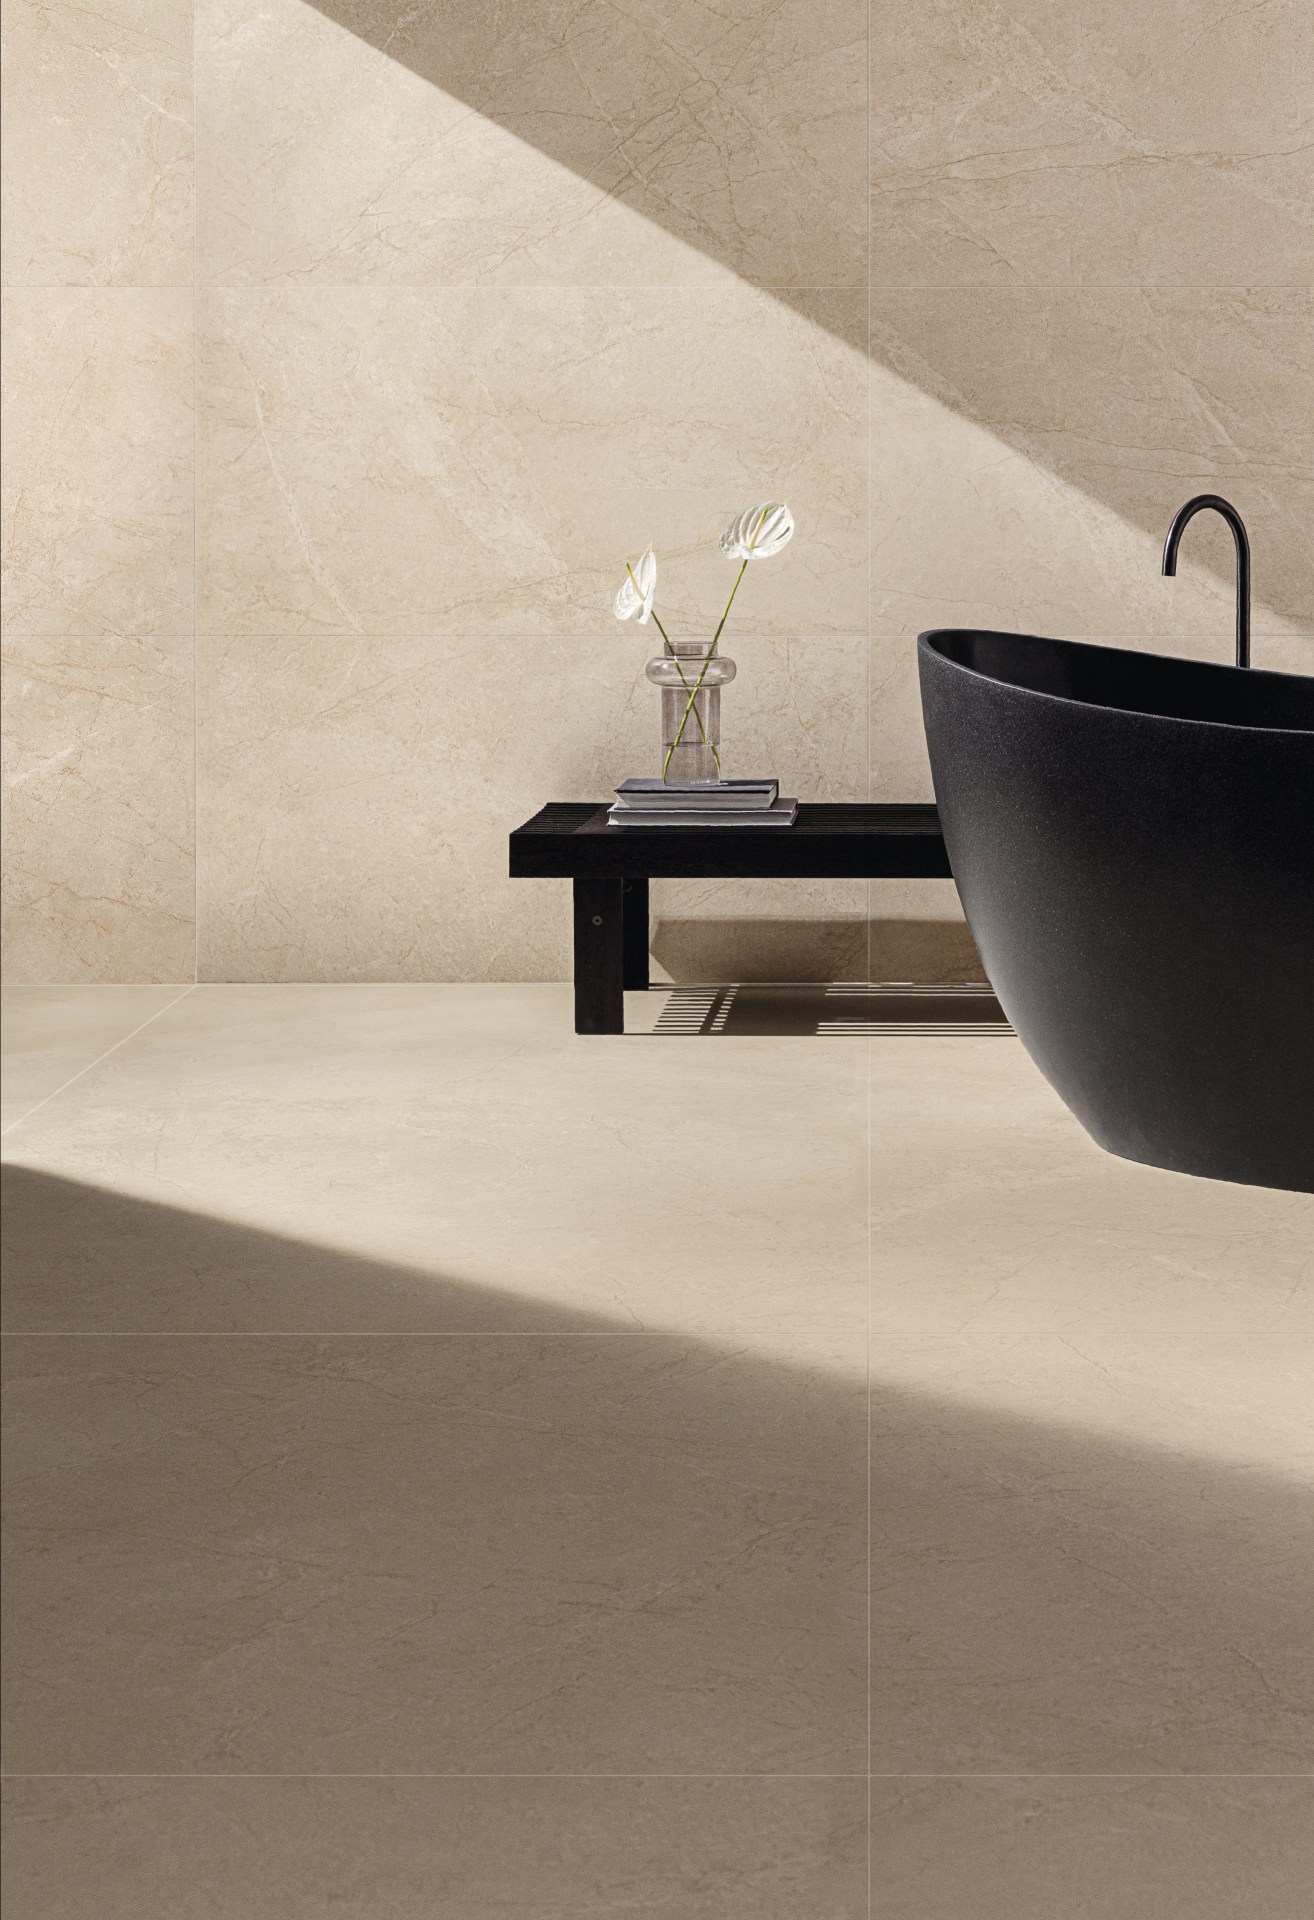 Banheiro amplo com piso e parede em mármore bege. Há uma banheira e um banquinho pretos